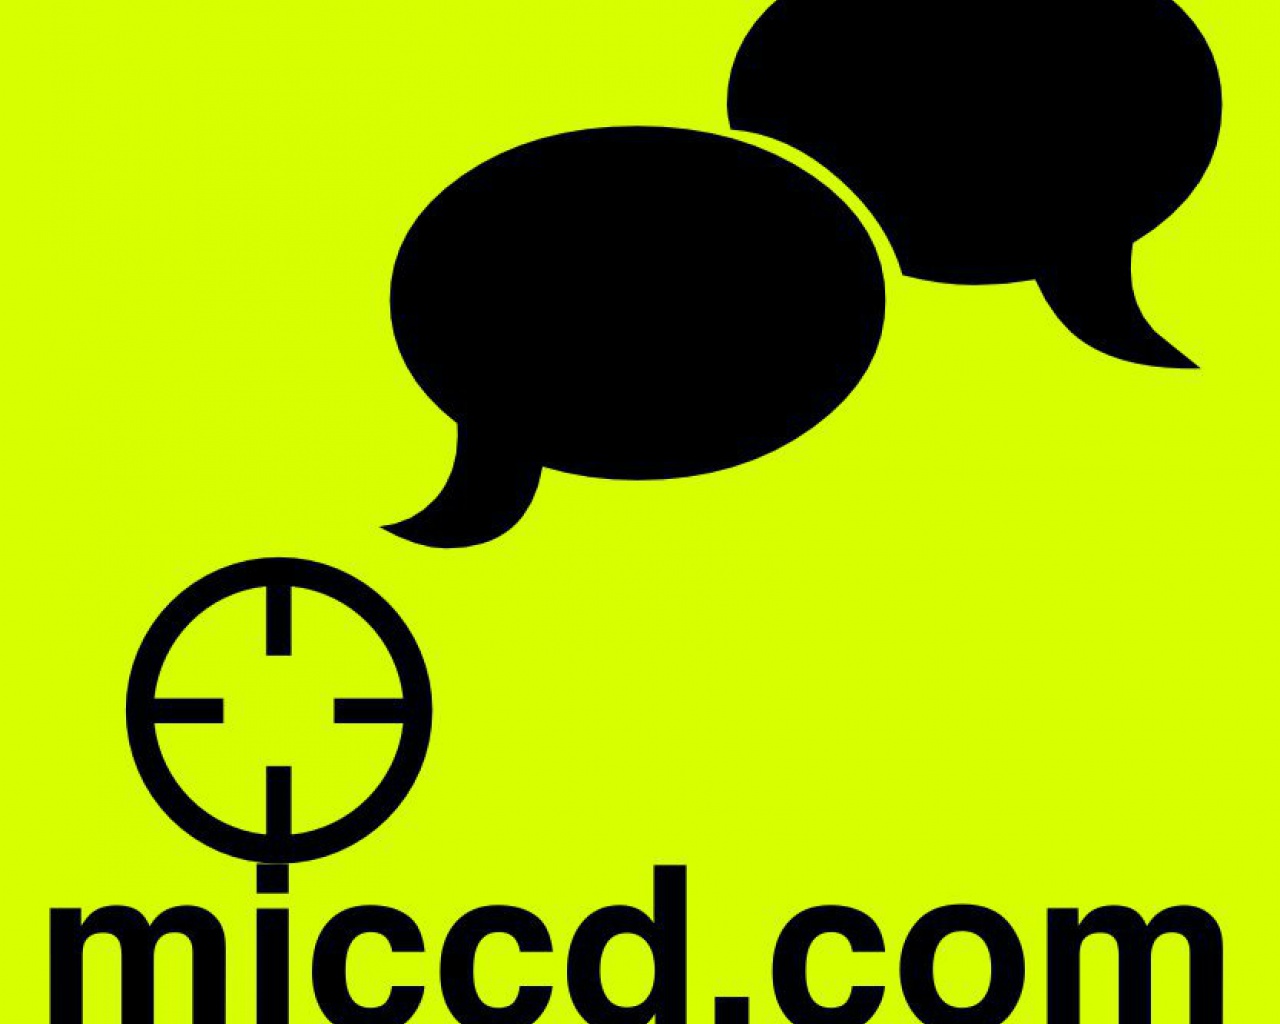 mjccd.com – le site de Mathieu Janin Conseil en communication diplômé